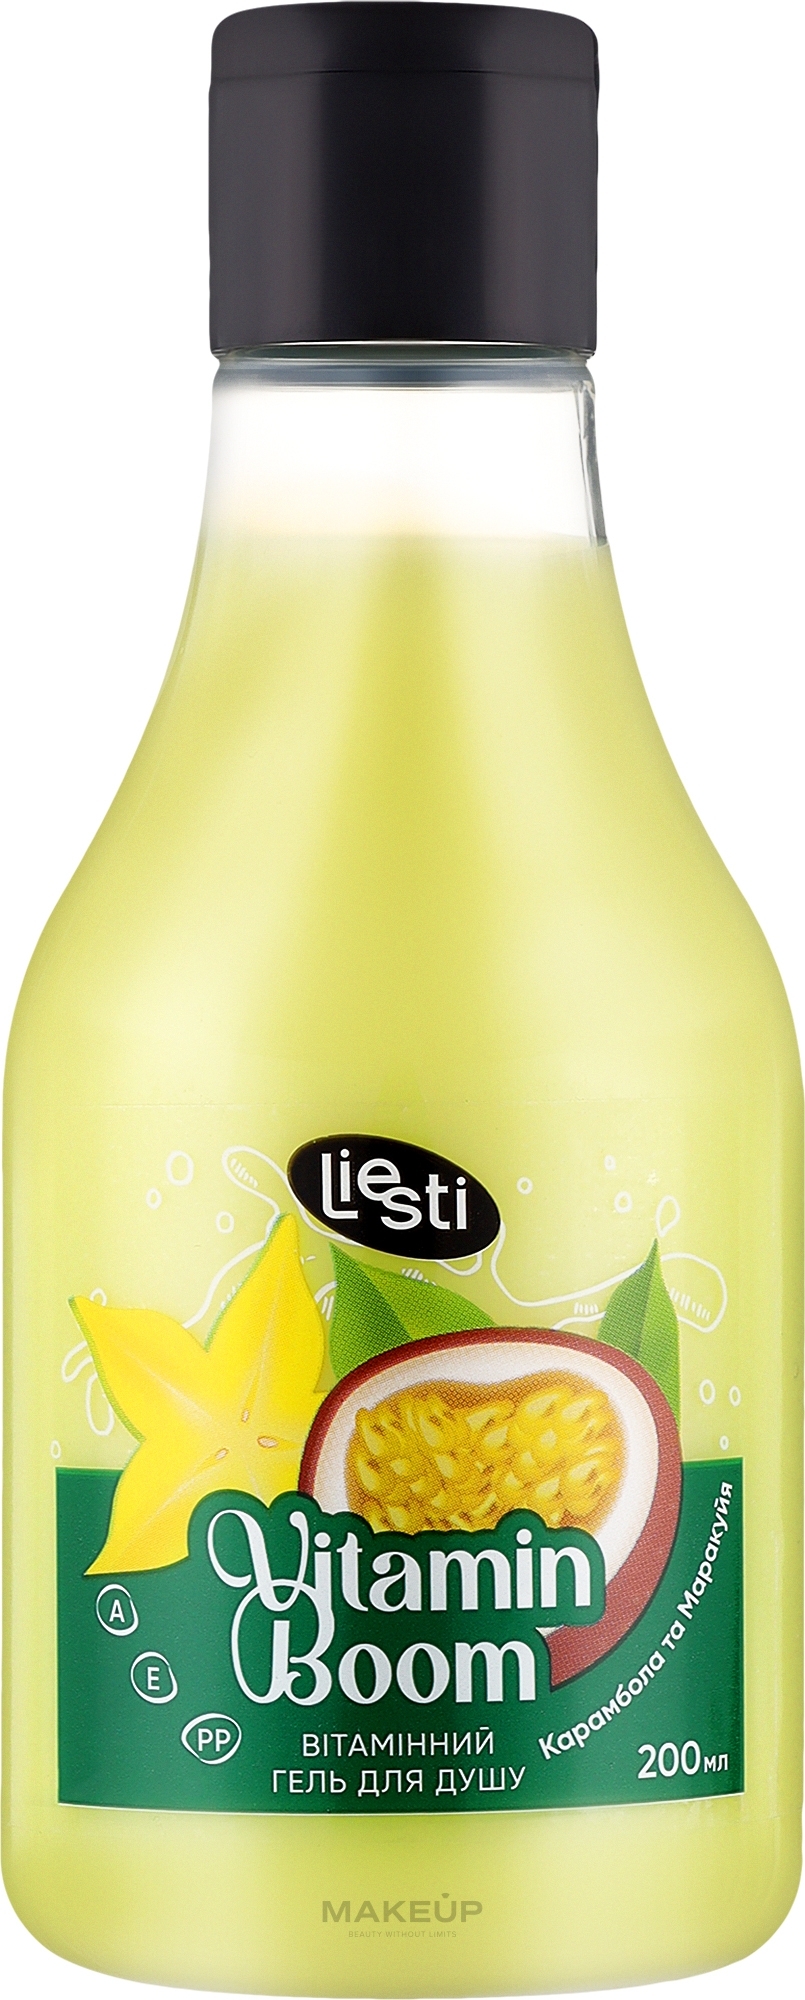 Вітамінний гель для душу "Карамбола та Маракуйя" - Liesti  Vitamin Boom Shower Gel — фото 200ml